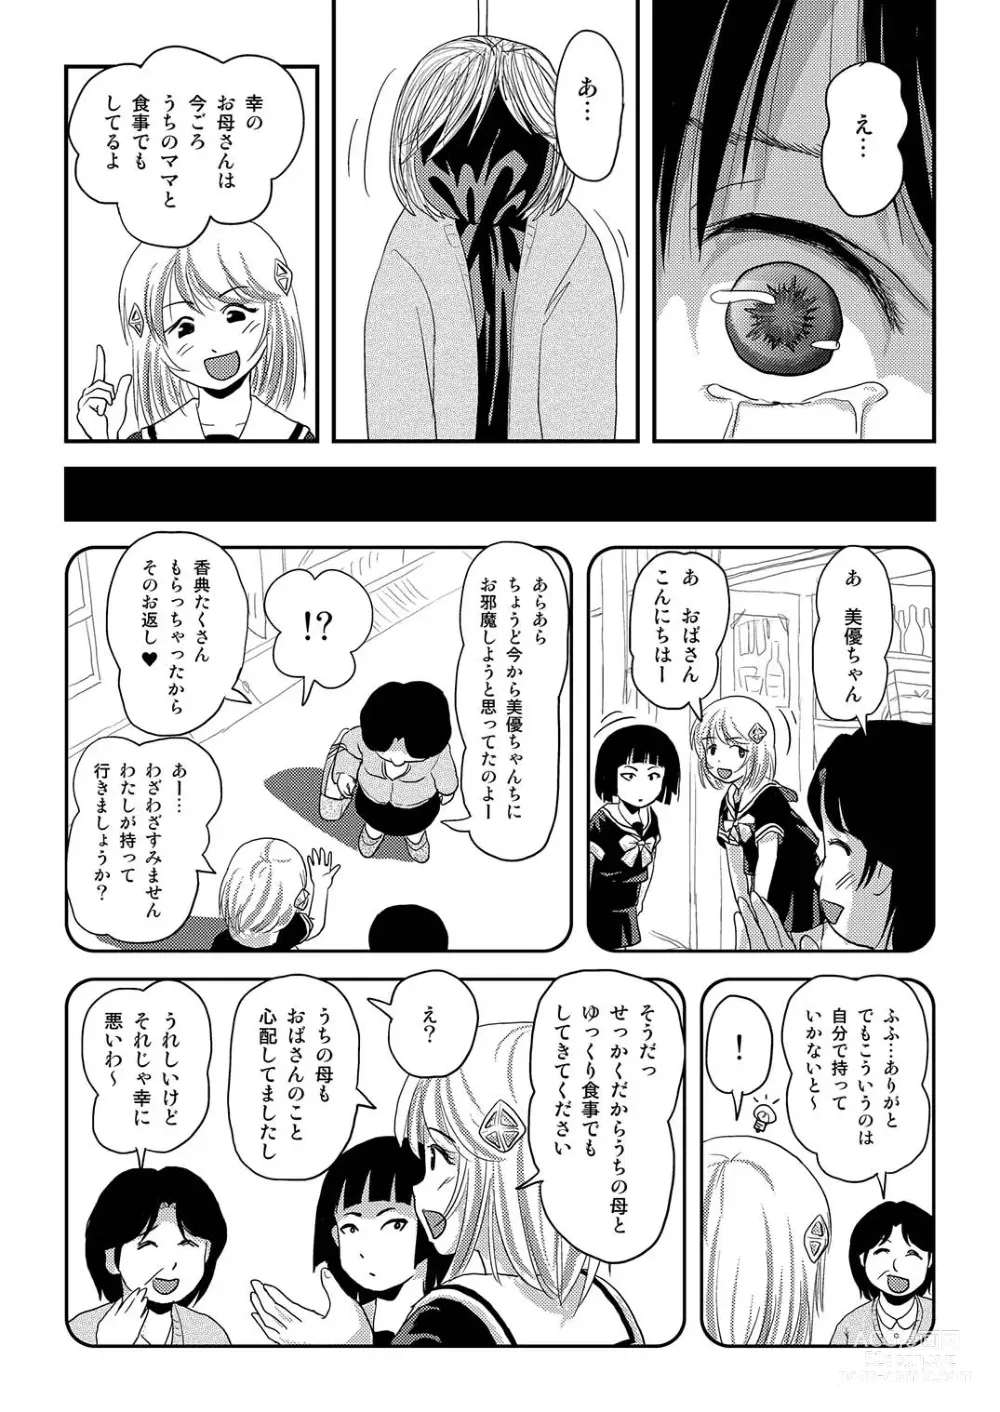 Page 9 of doujinshi Sonna no zurui 2